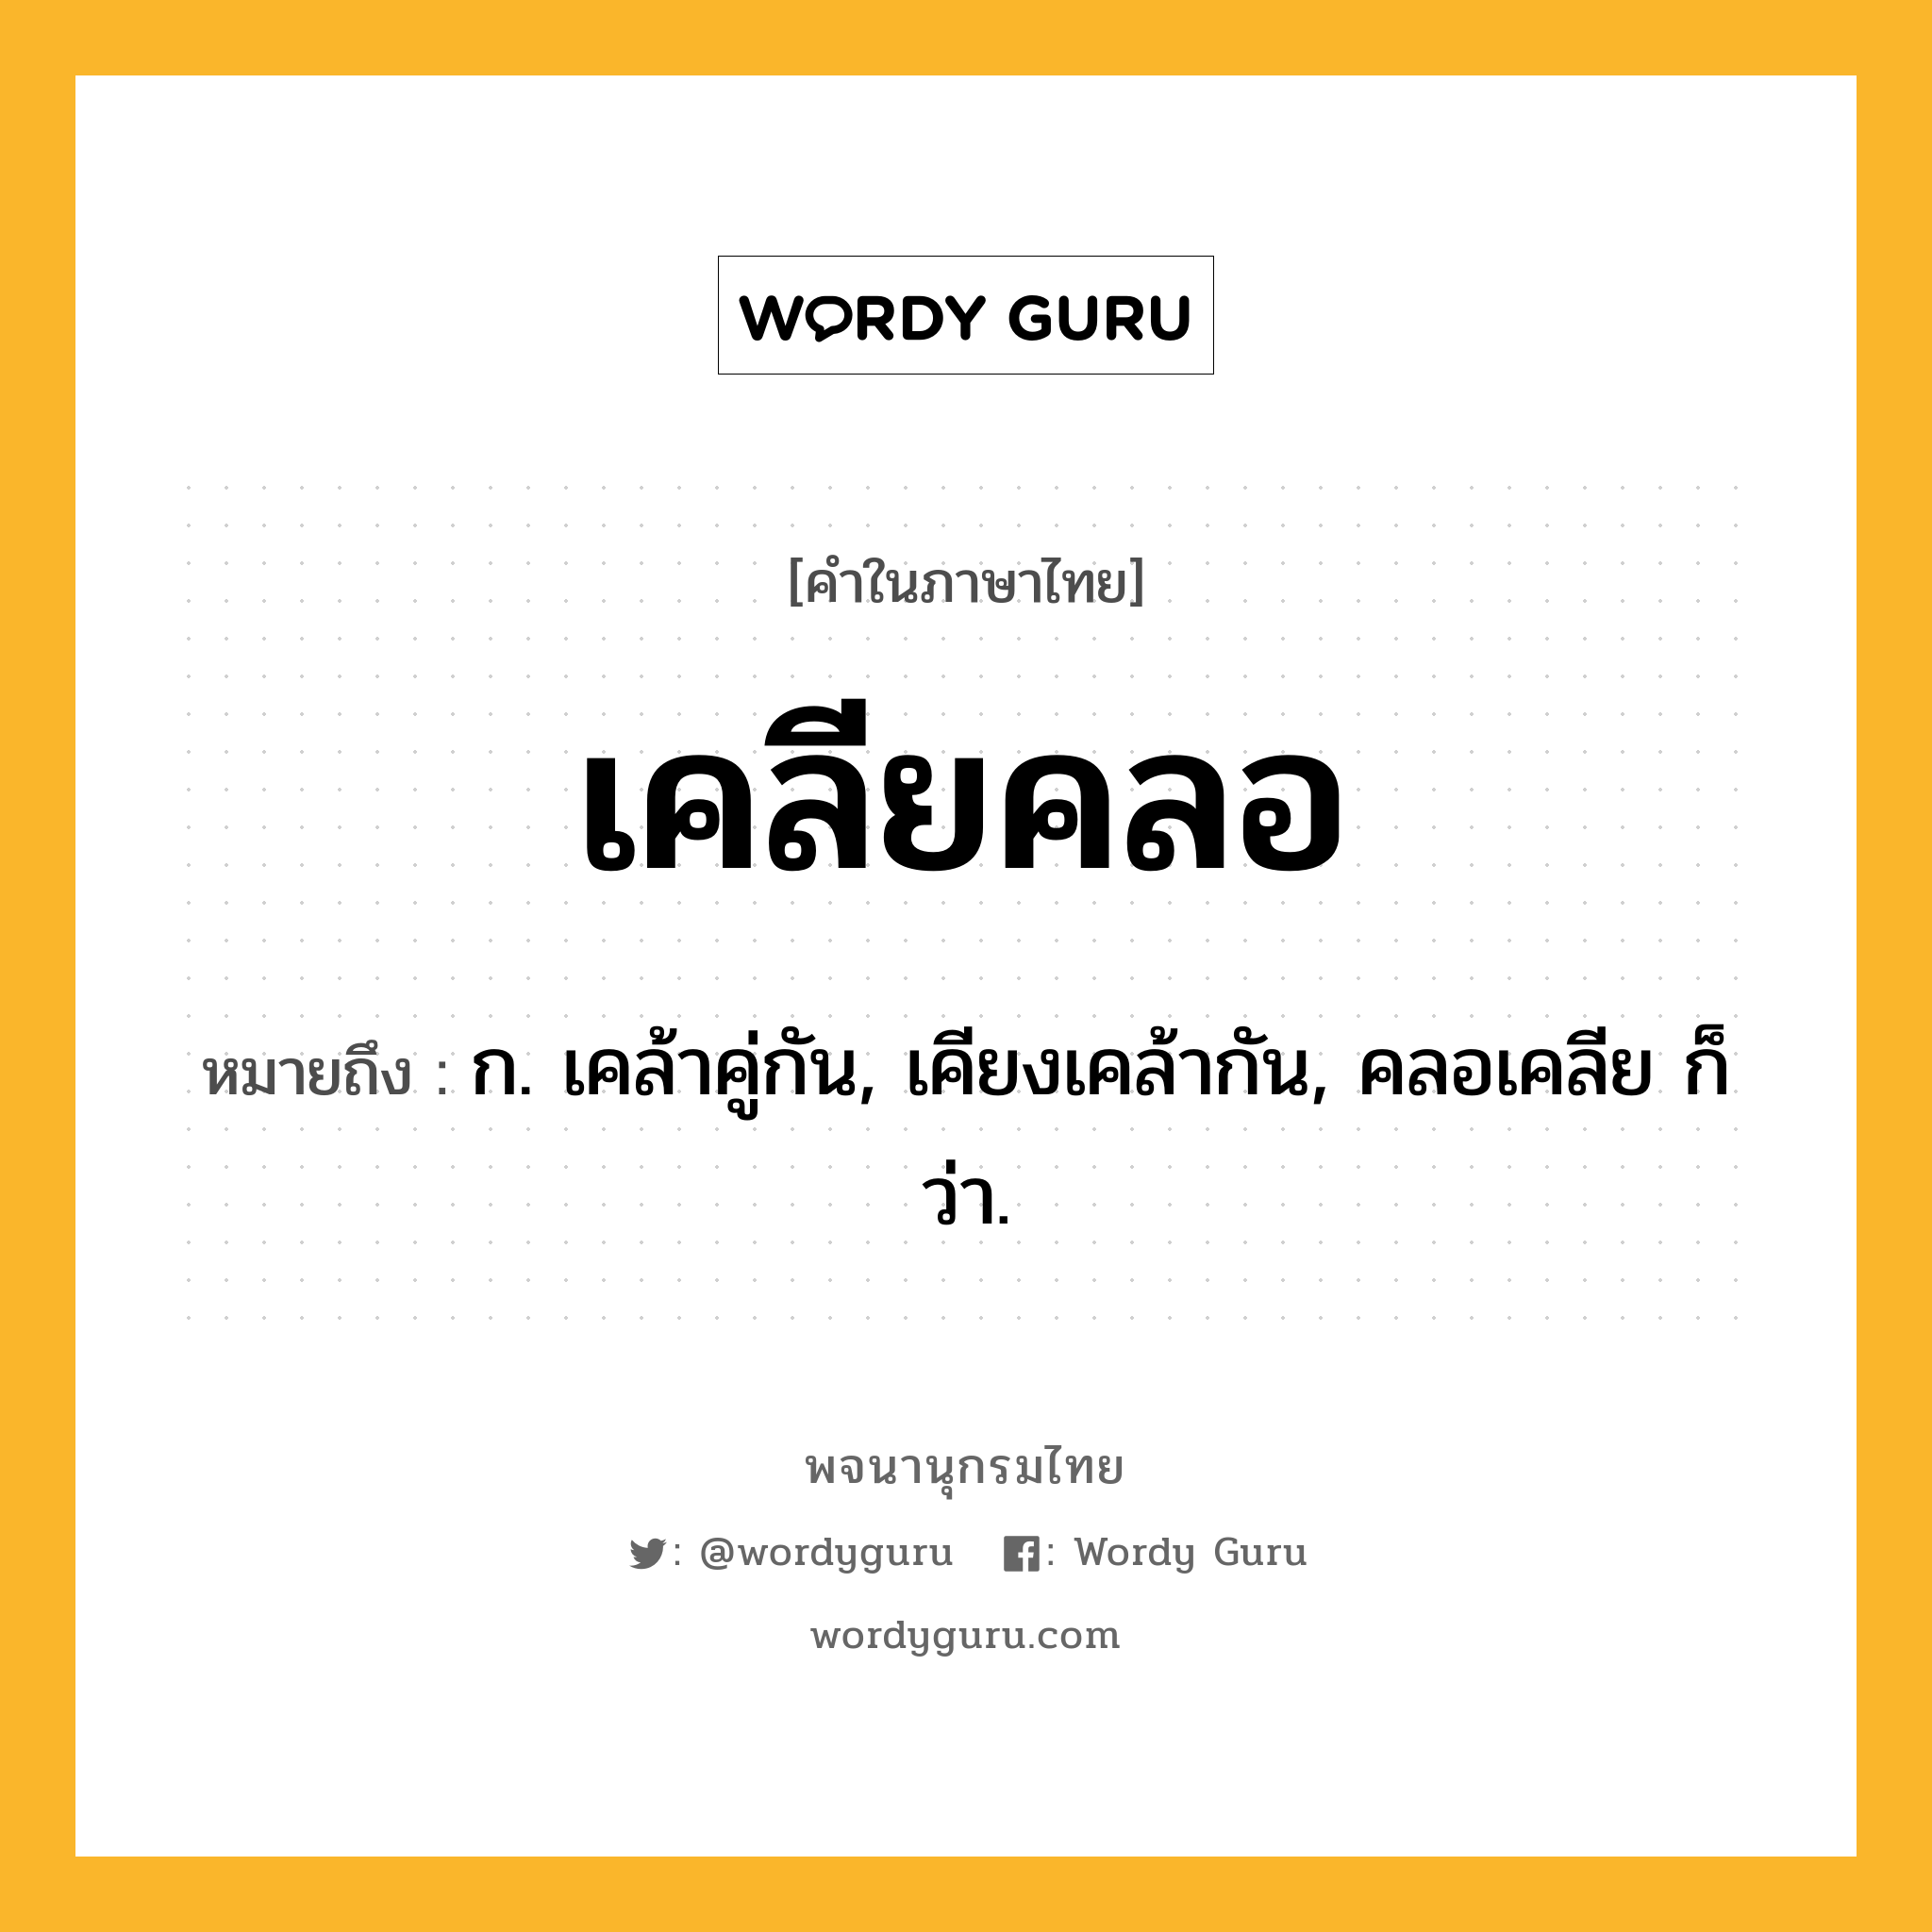 เคลียคลอ หมายถึงอะไร?, คำในภาษาไทย เคลียคลอ หมายถึง ก. เคล้าคู่กัน, เคียงเคล้ากัน, คลอเคลีย ก็ว่า.